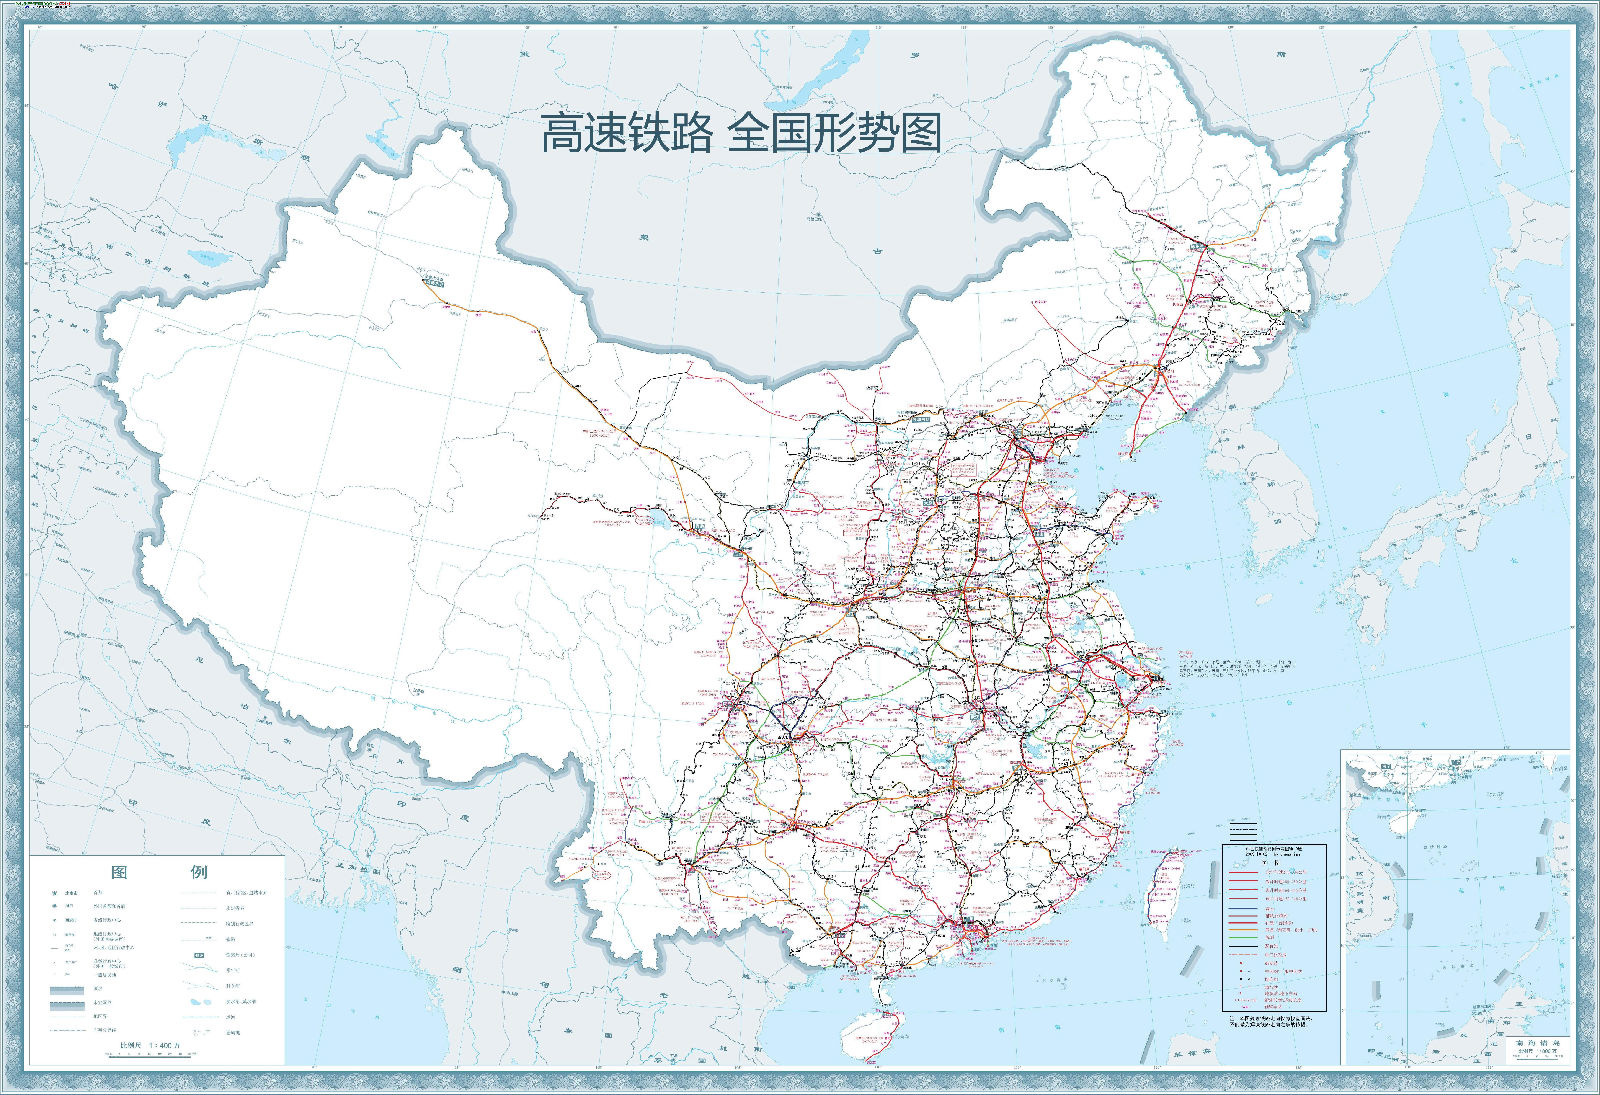 没有高铁,霞浦未来的命运被改写?